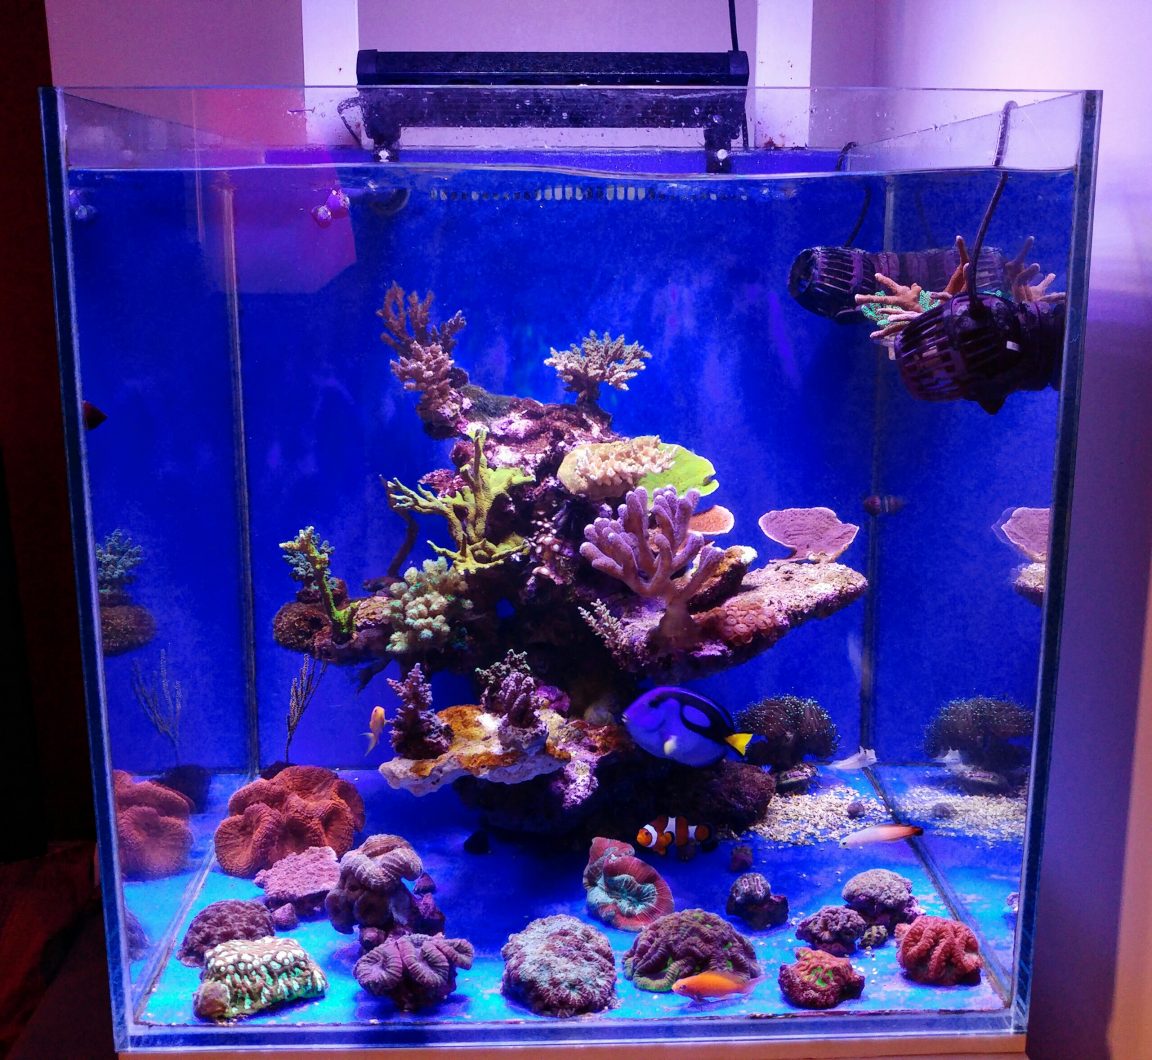 orphek best aquarium led lighting 2020